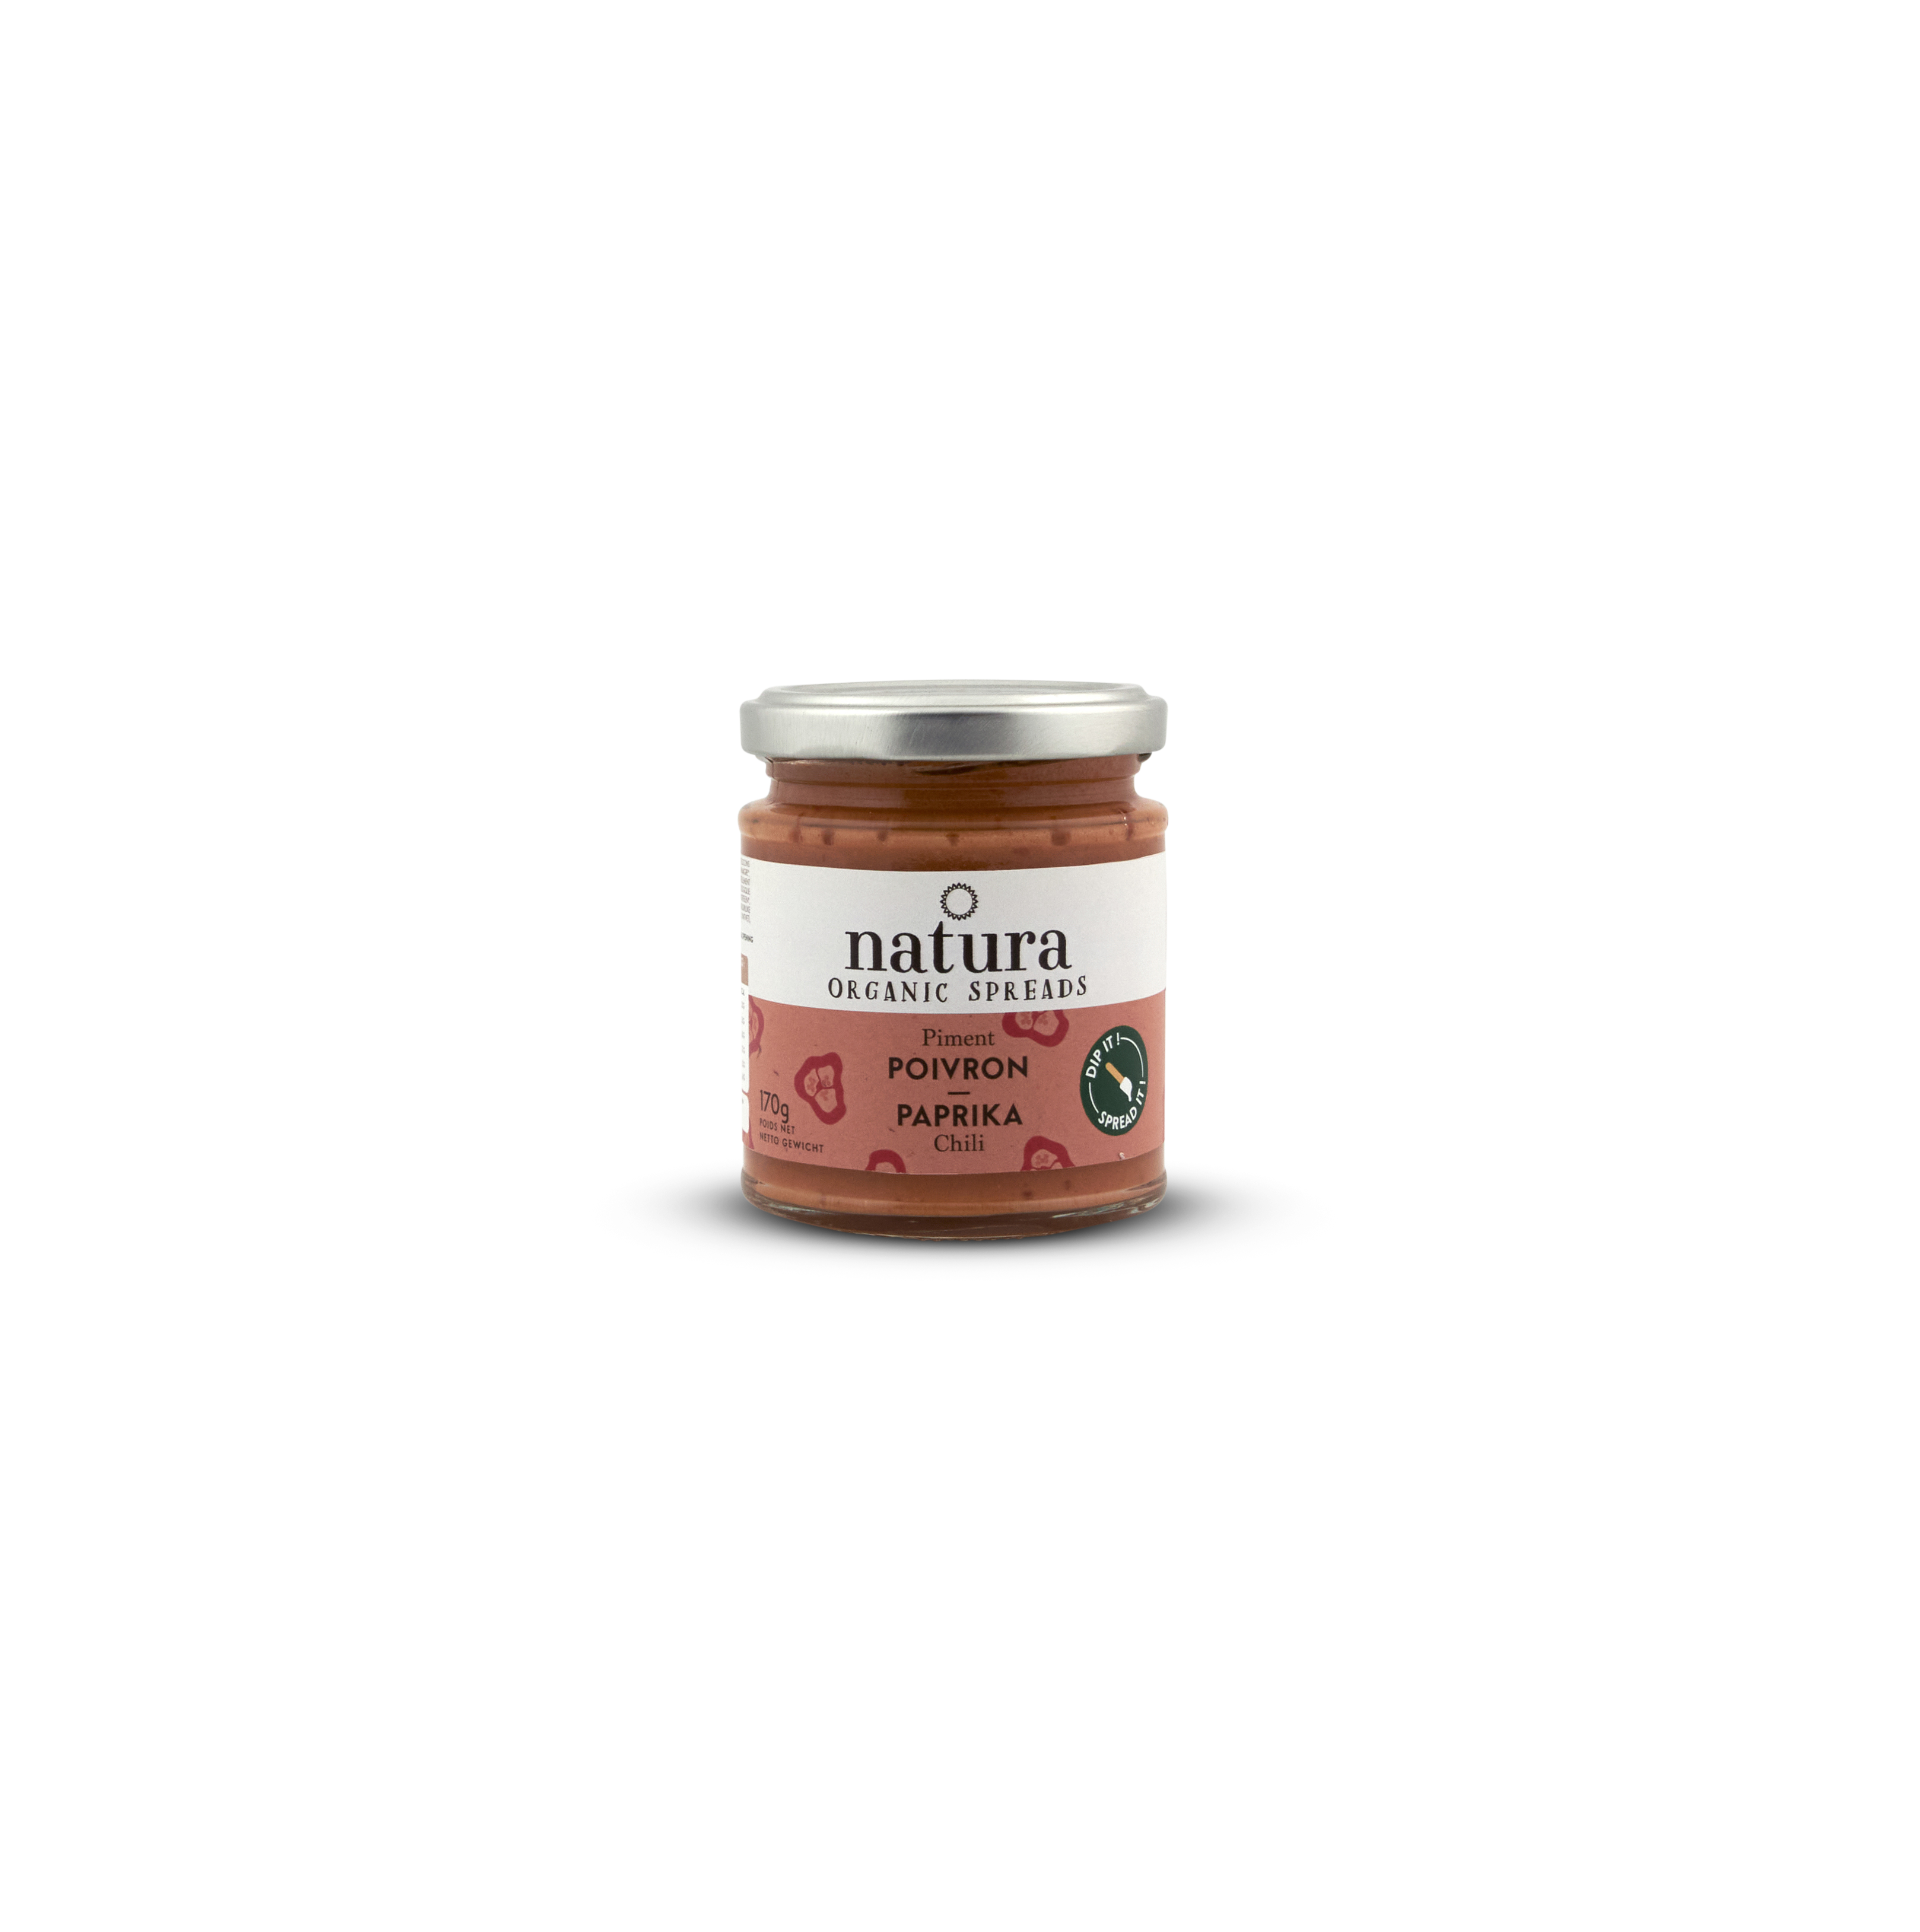 Natura Spread poivron-piment bio 170g